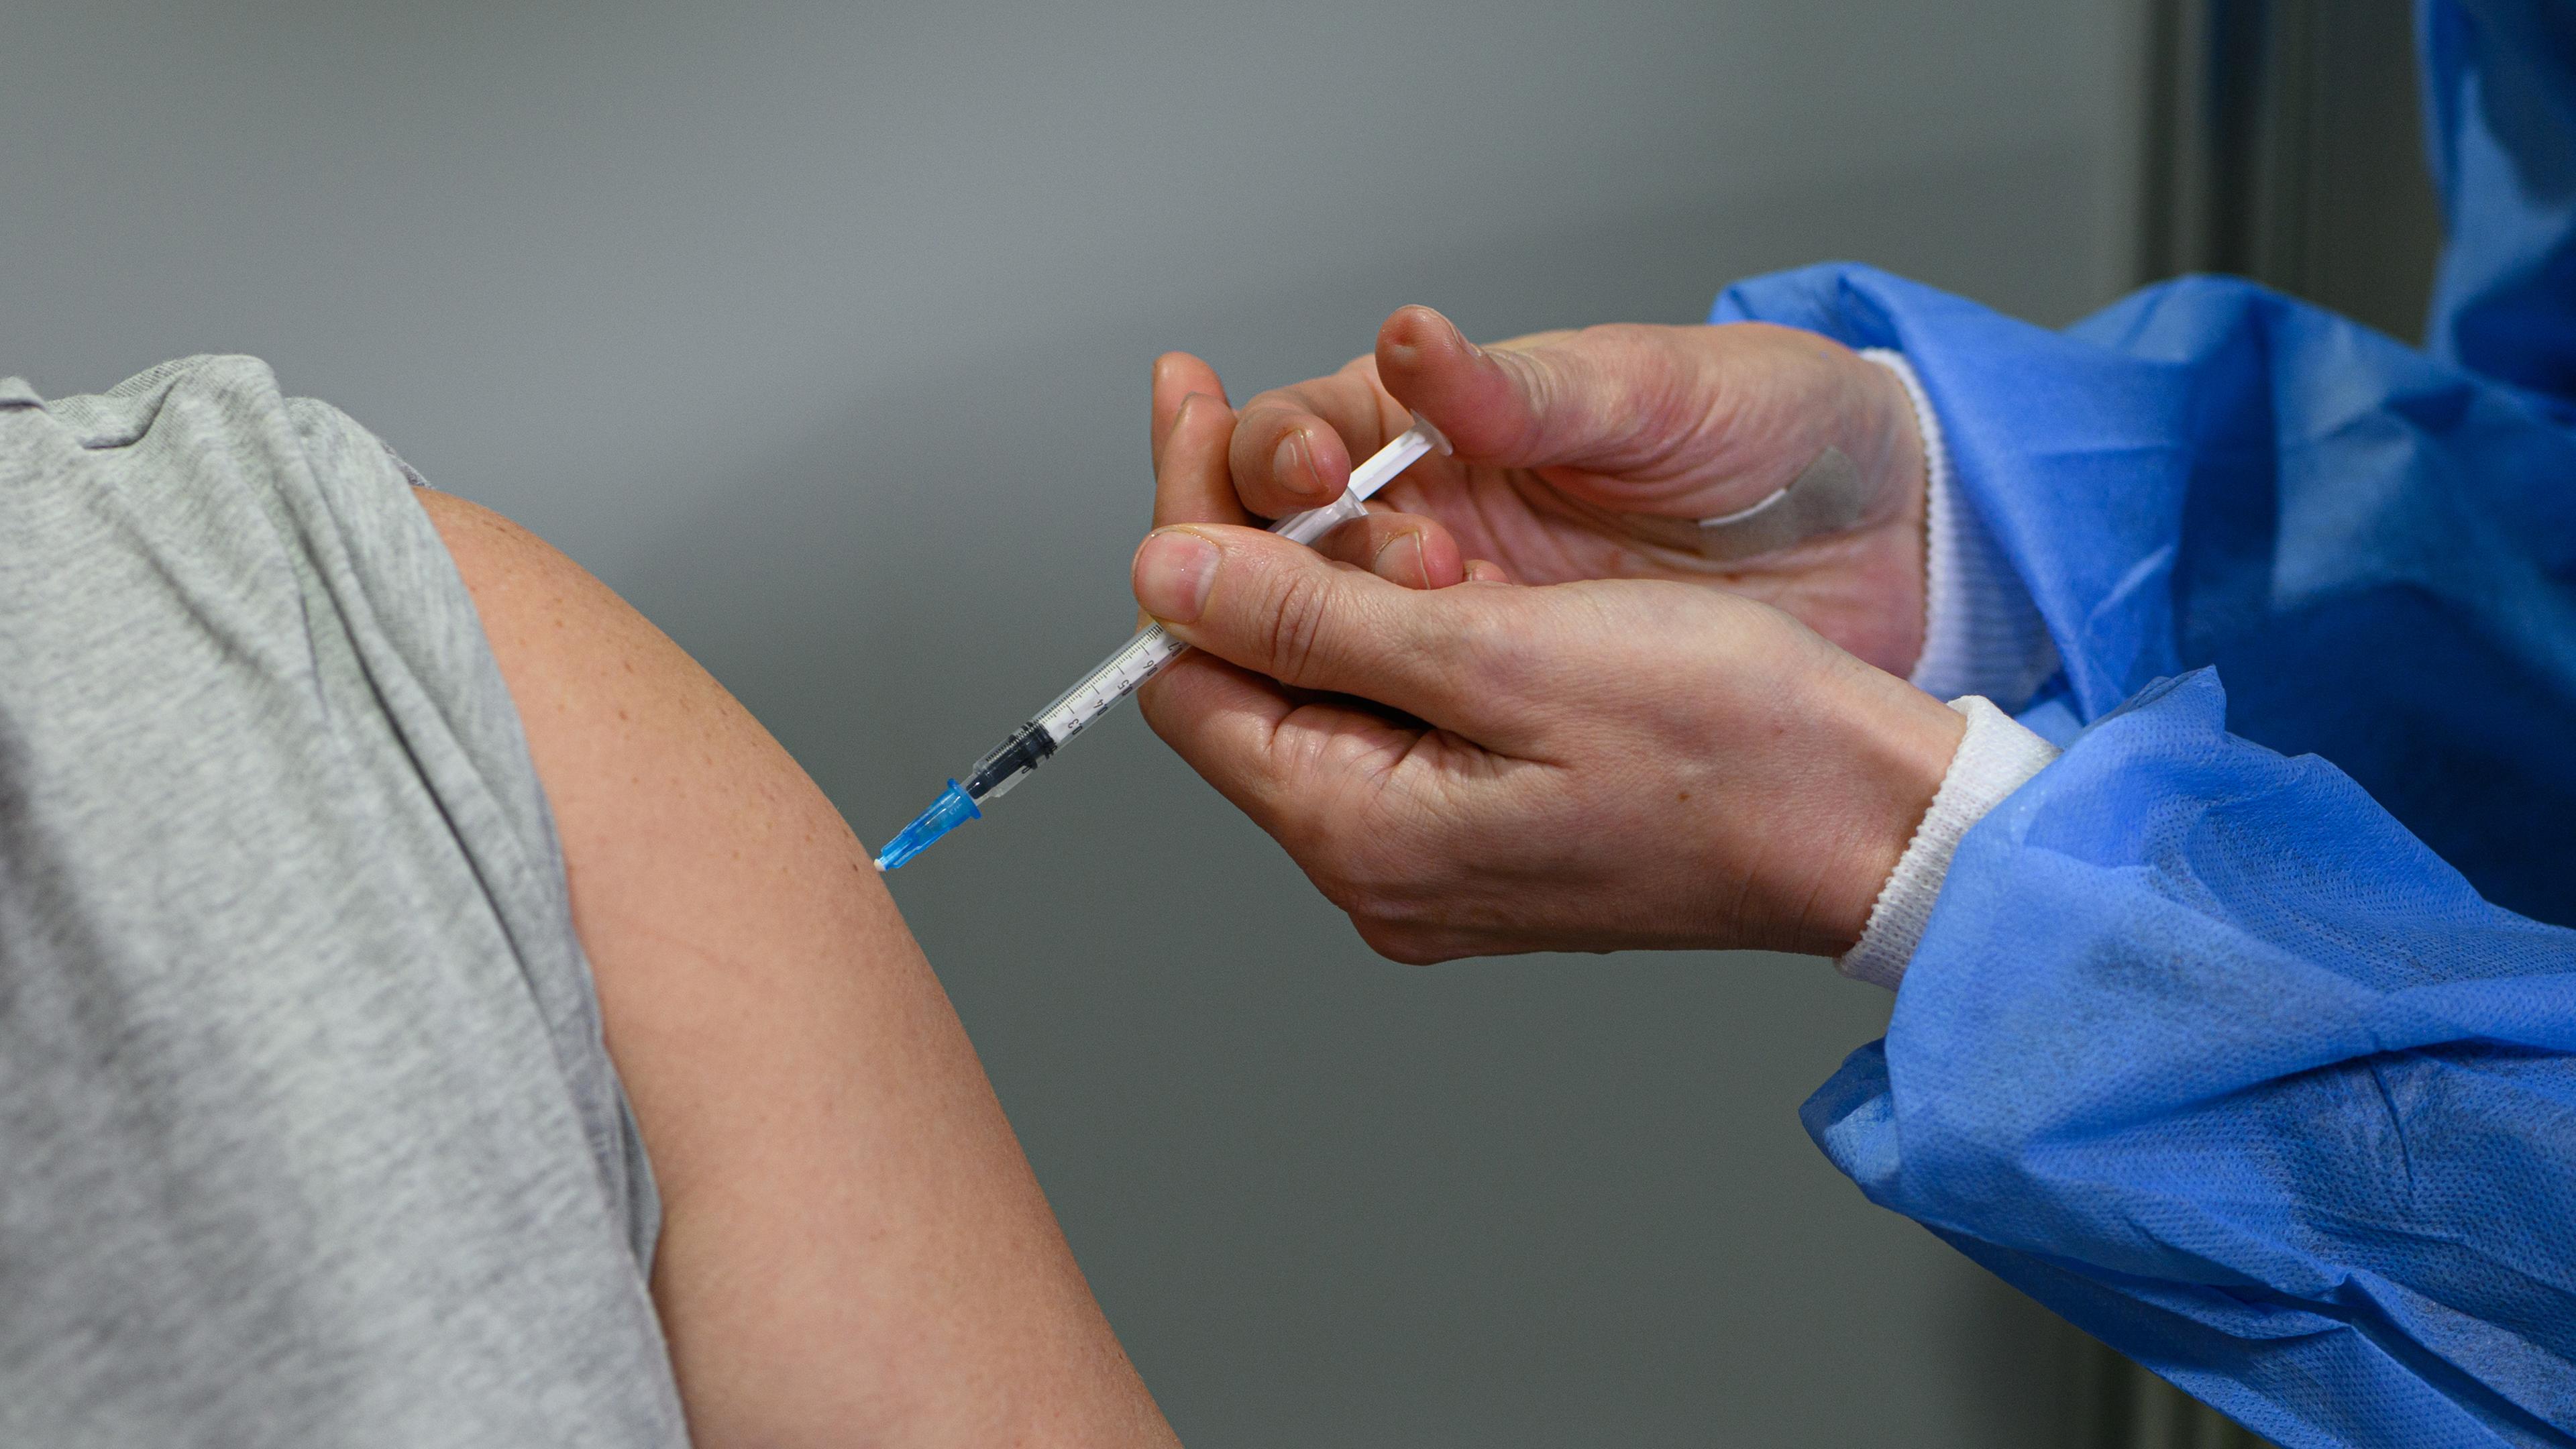 28.02.2022, Sachsen, Dresden: Eine Person wird mit einem Corona-Impfstoff geimpft. Archivbild